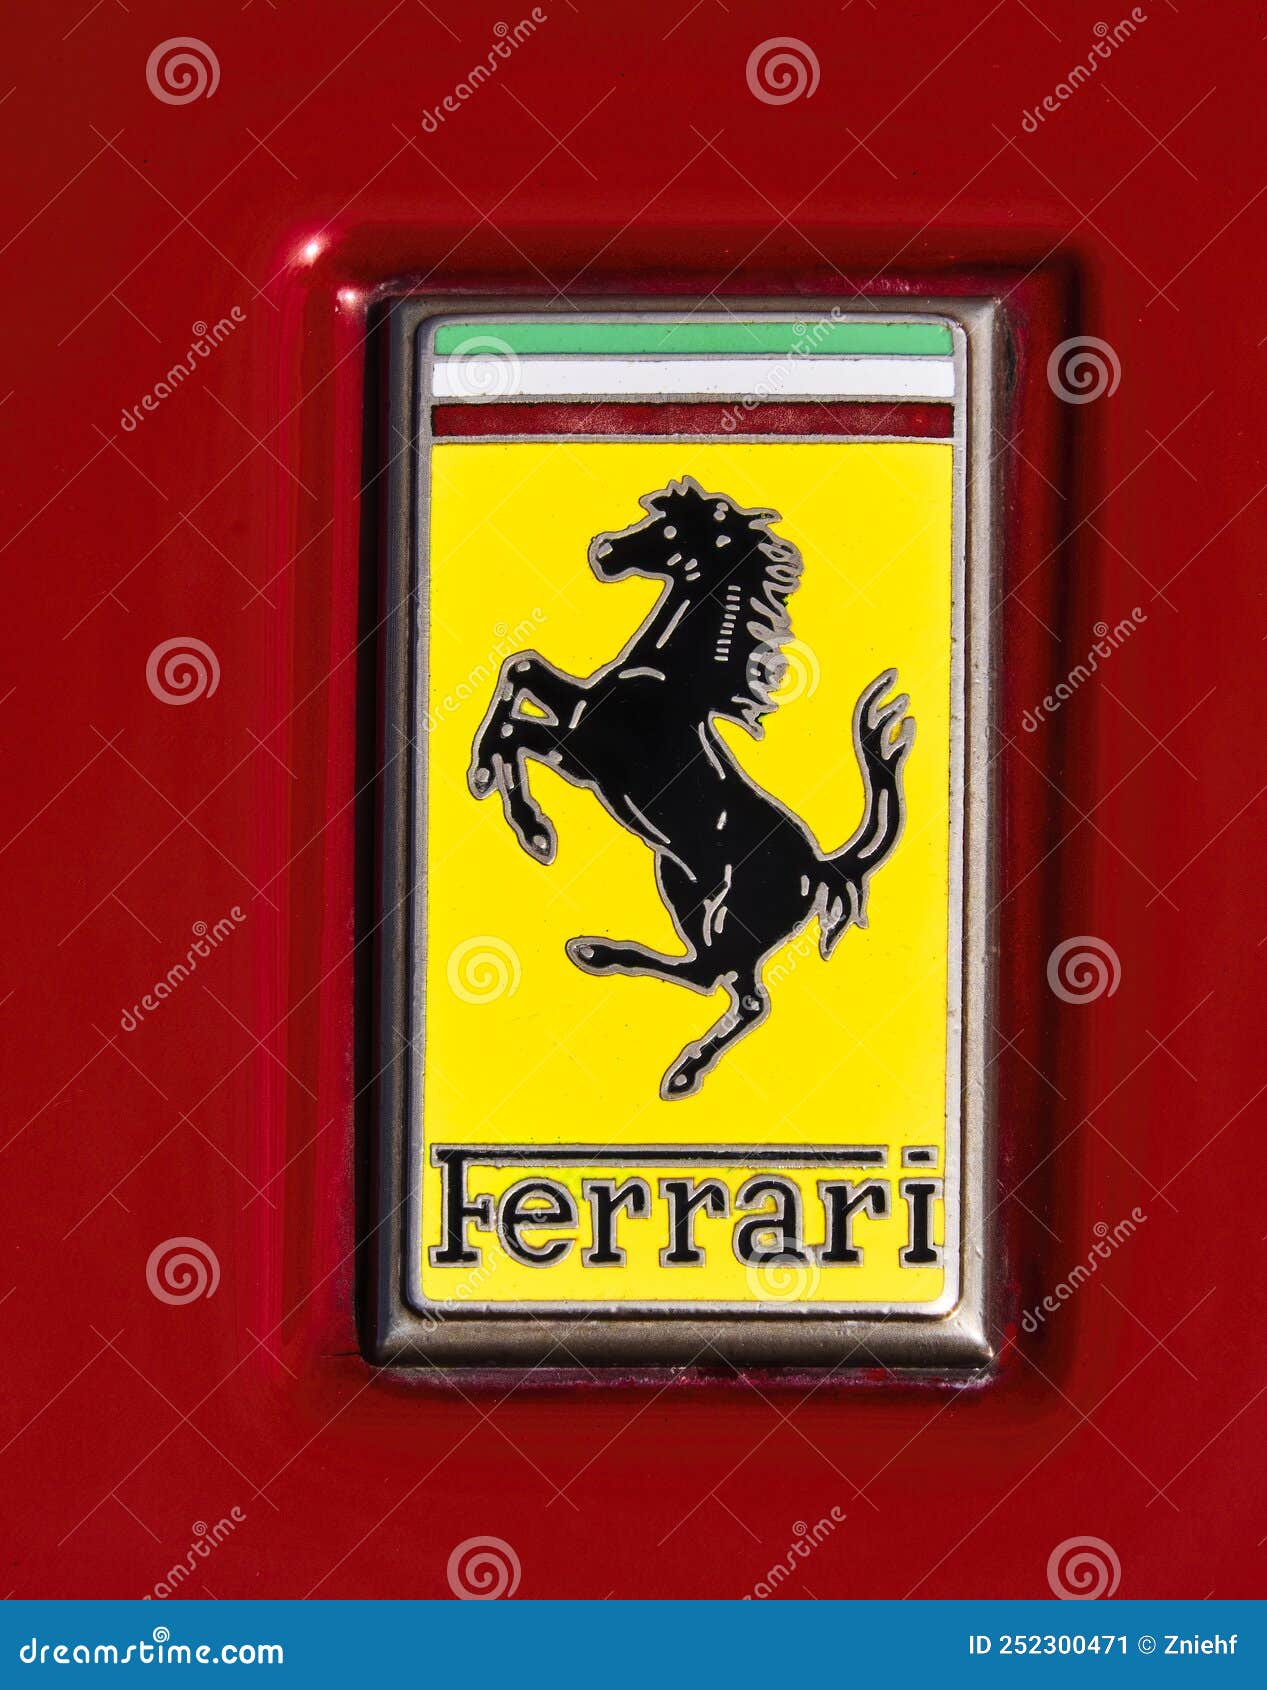 Nếu bạn là một fan của Ferrari, bạn sẽ yêu thích bức ảnh này! Với chiếc logo Ferrari lừng danh và con ngựa đen cực kì bắt mắt trên nền tảng tấm kim loại đỏ nổi bật, bức ảnh này có thể làm rung động trái tim của bất kỳ ai là người yêu thích xe hơi. Đặc biệt, vẻ đẹp của tông màu vàng làm nổi bật chiếc xe thể thao đẳng cấp này.